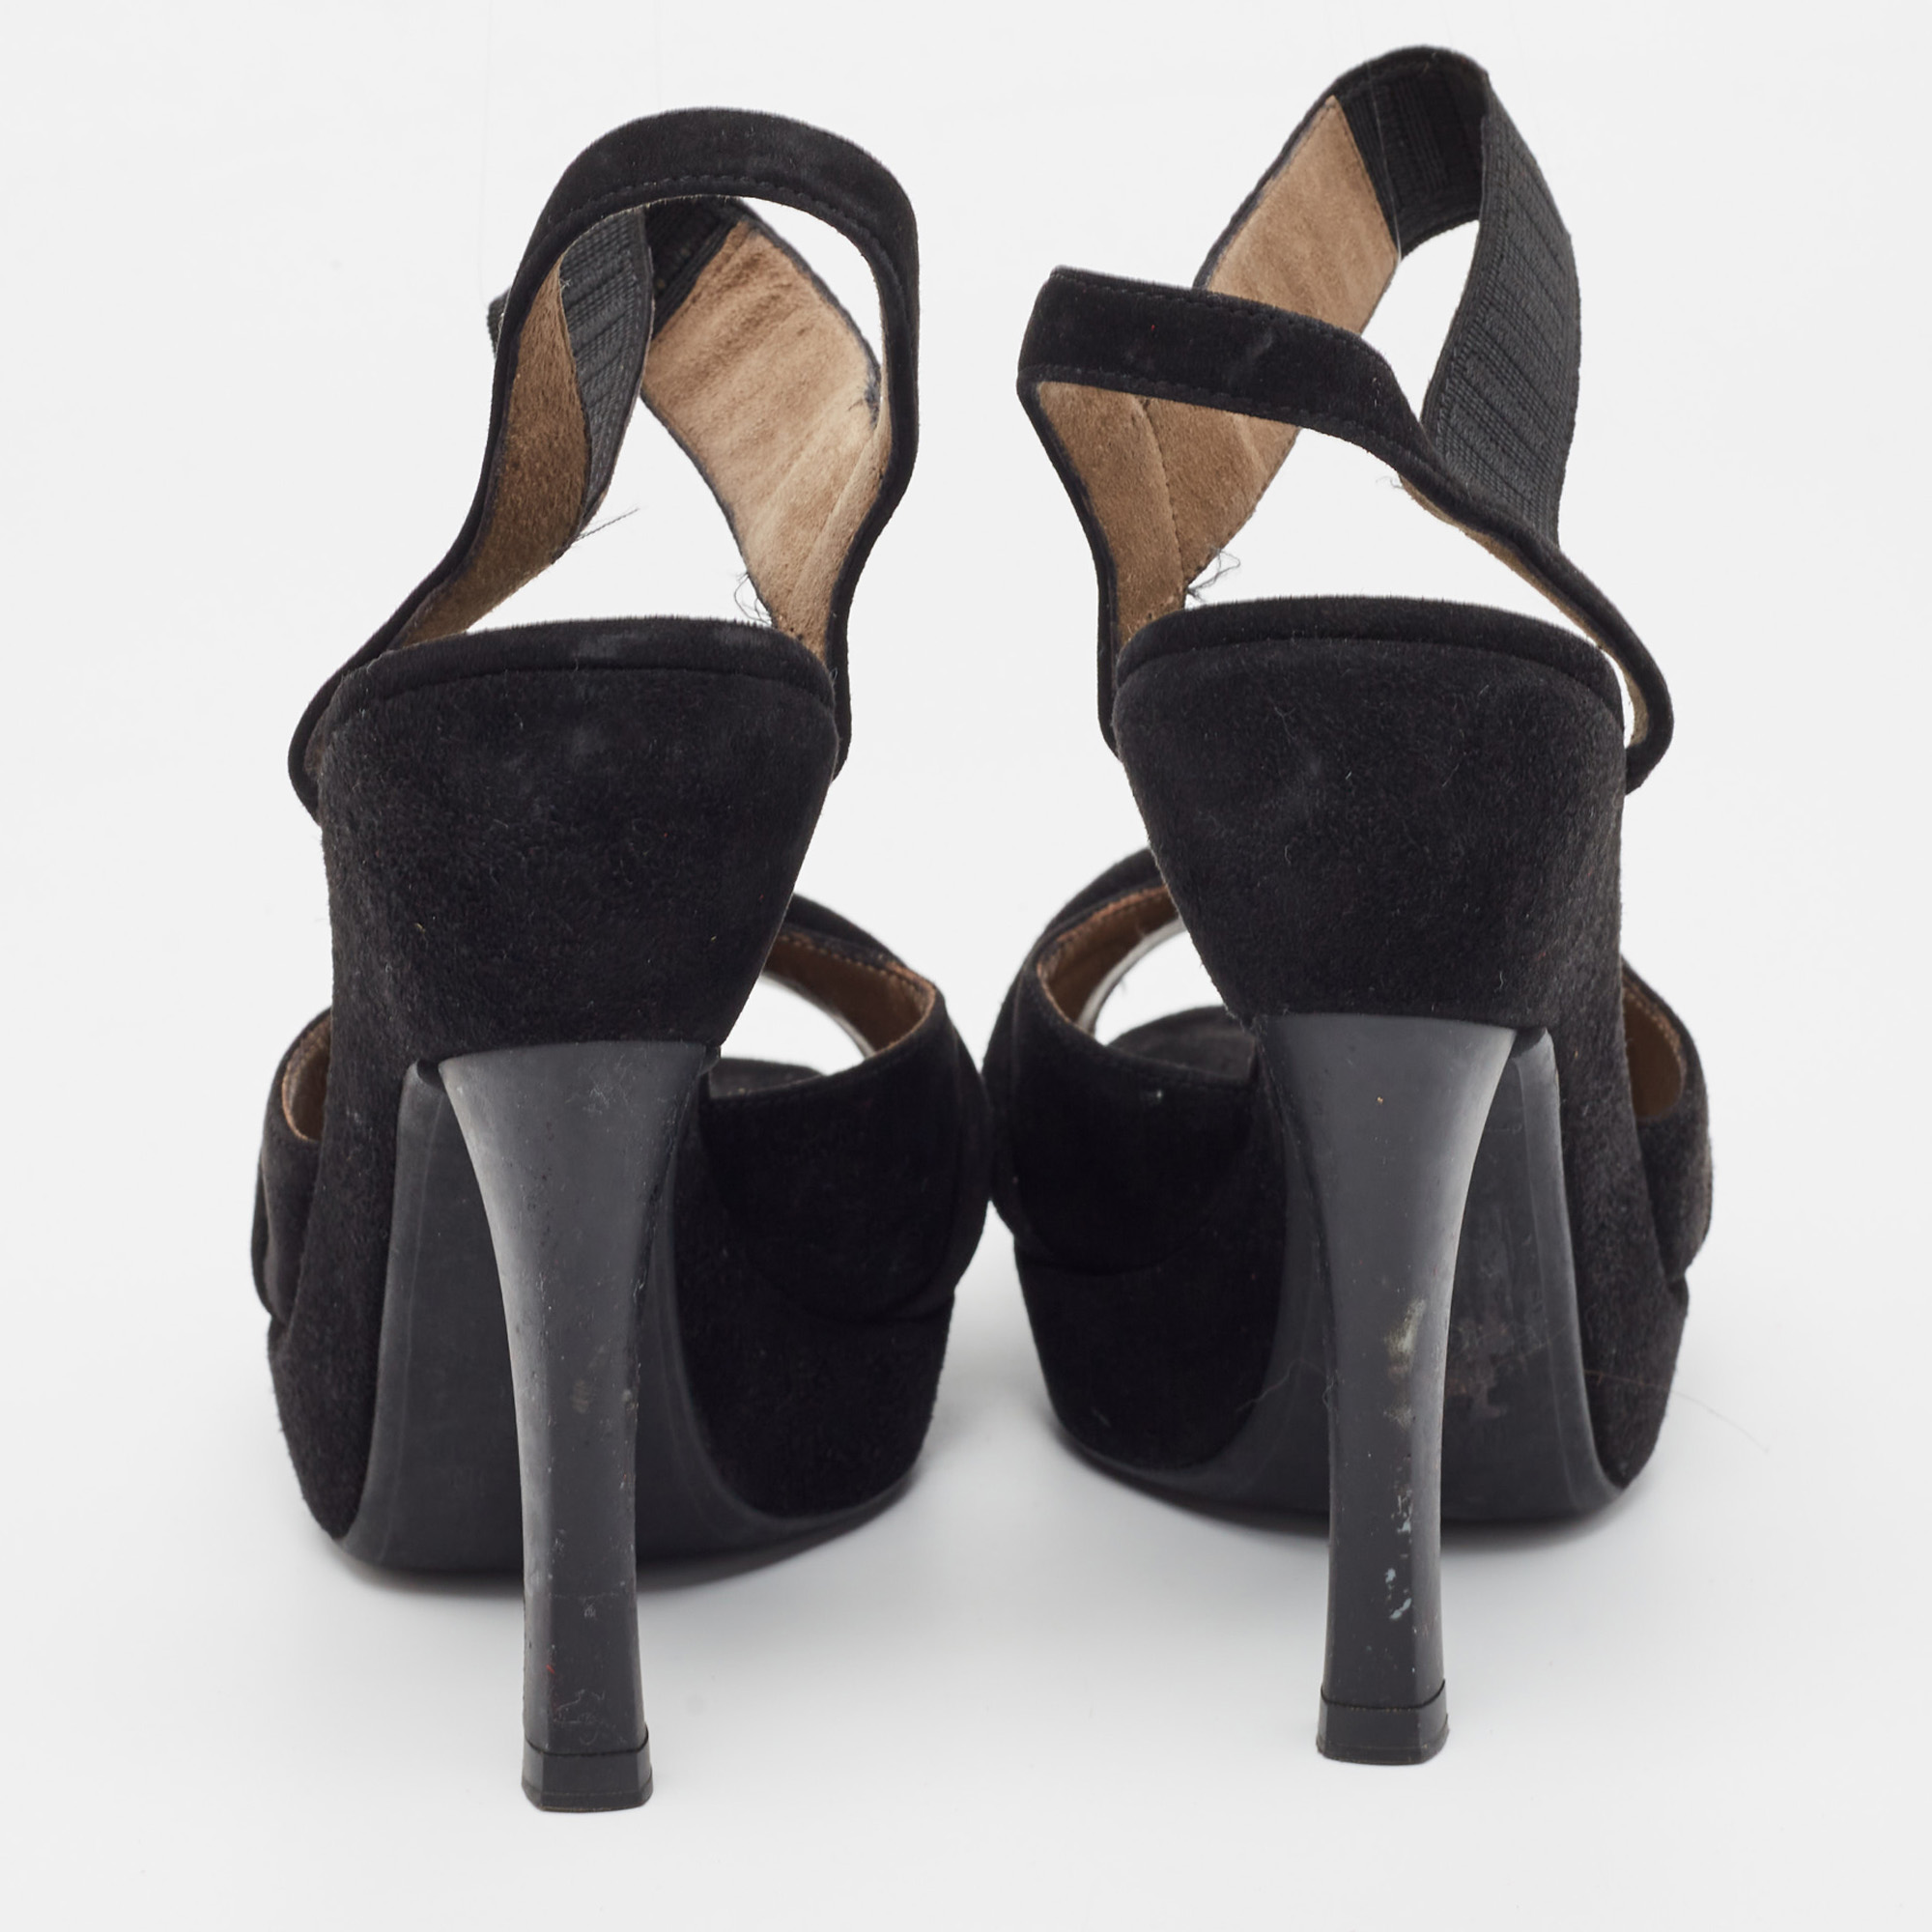 Marni Black Suede Platform Ankle Strap Sandals Size 36